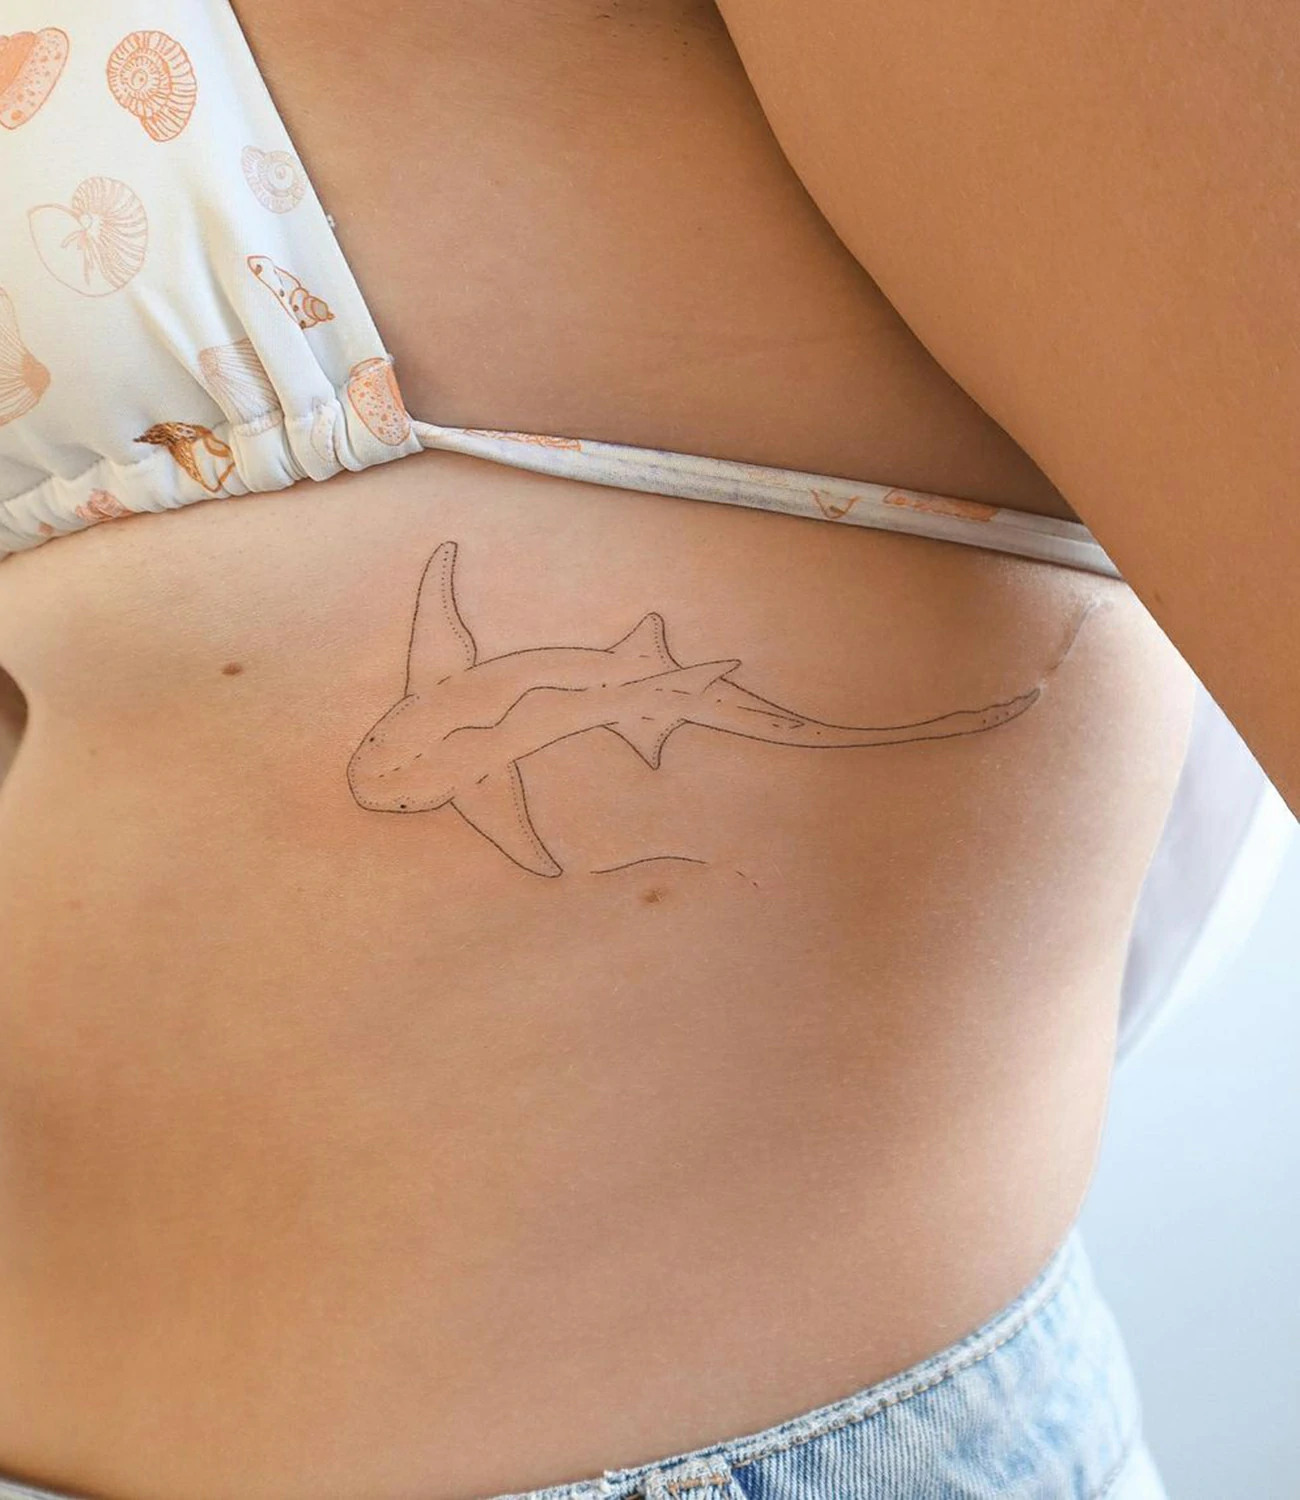 Nurse Shark Tattoo